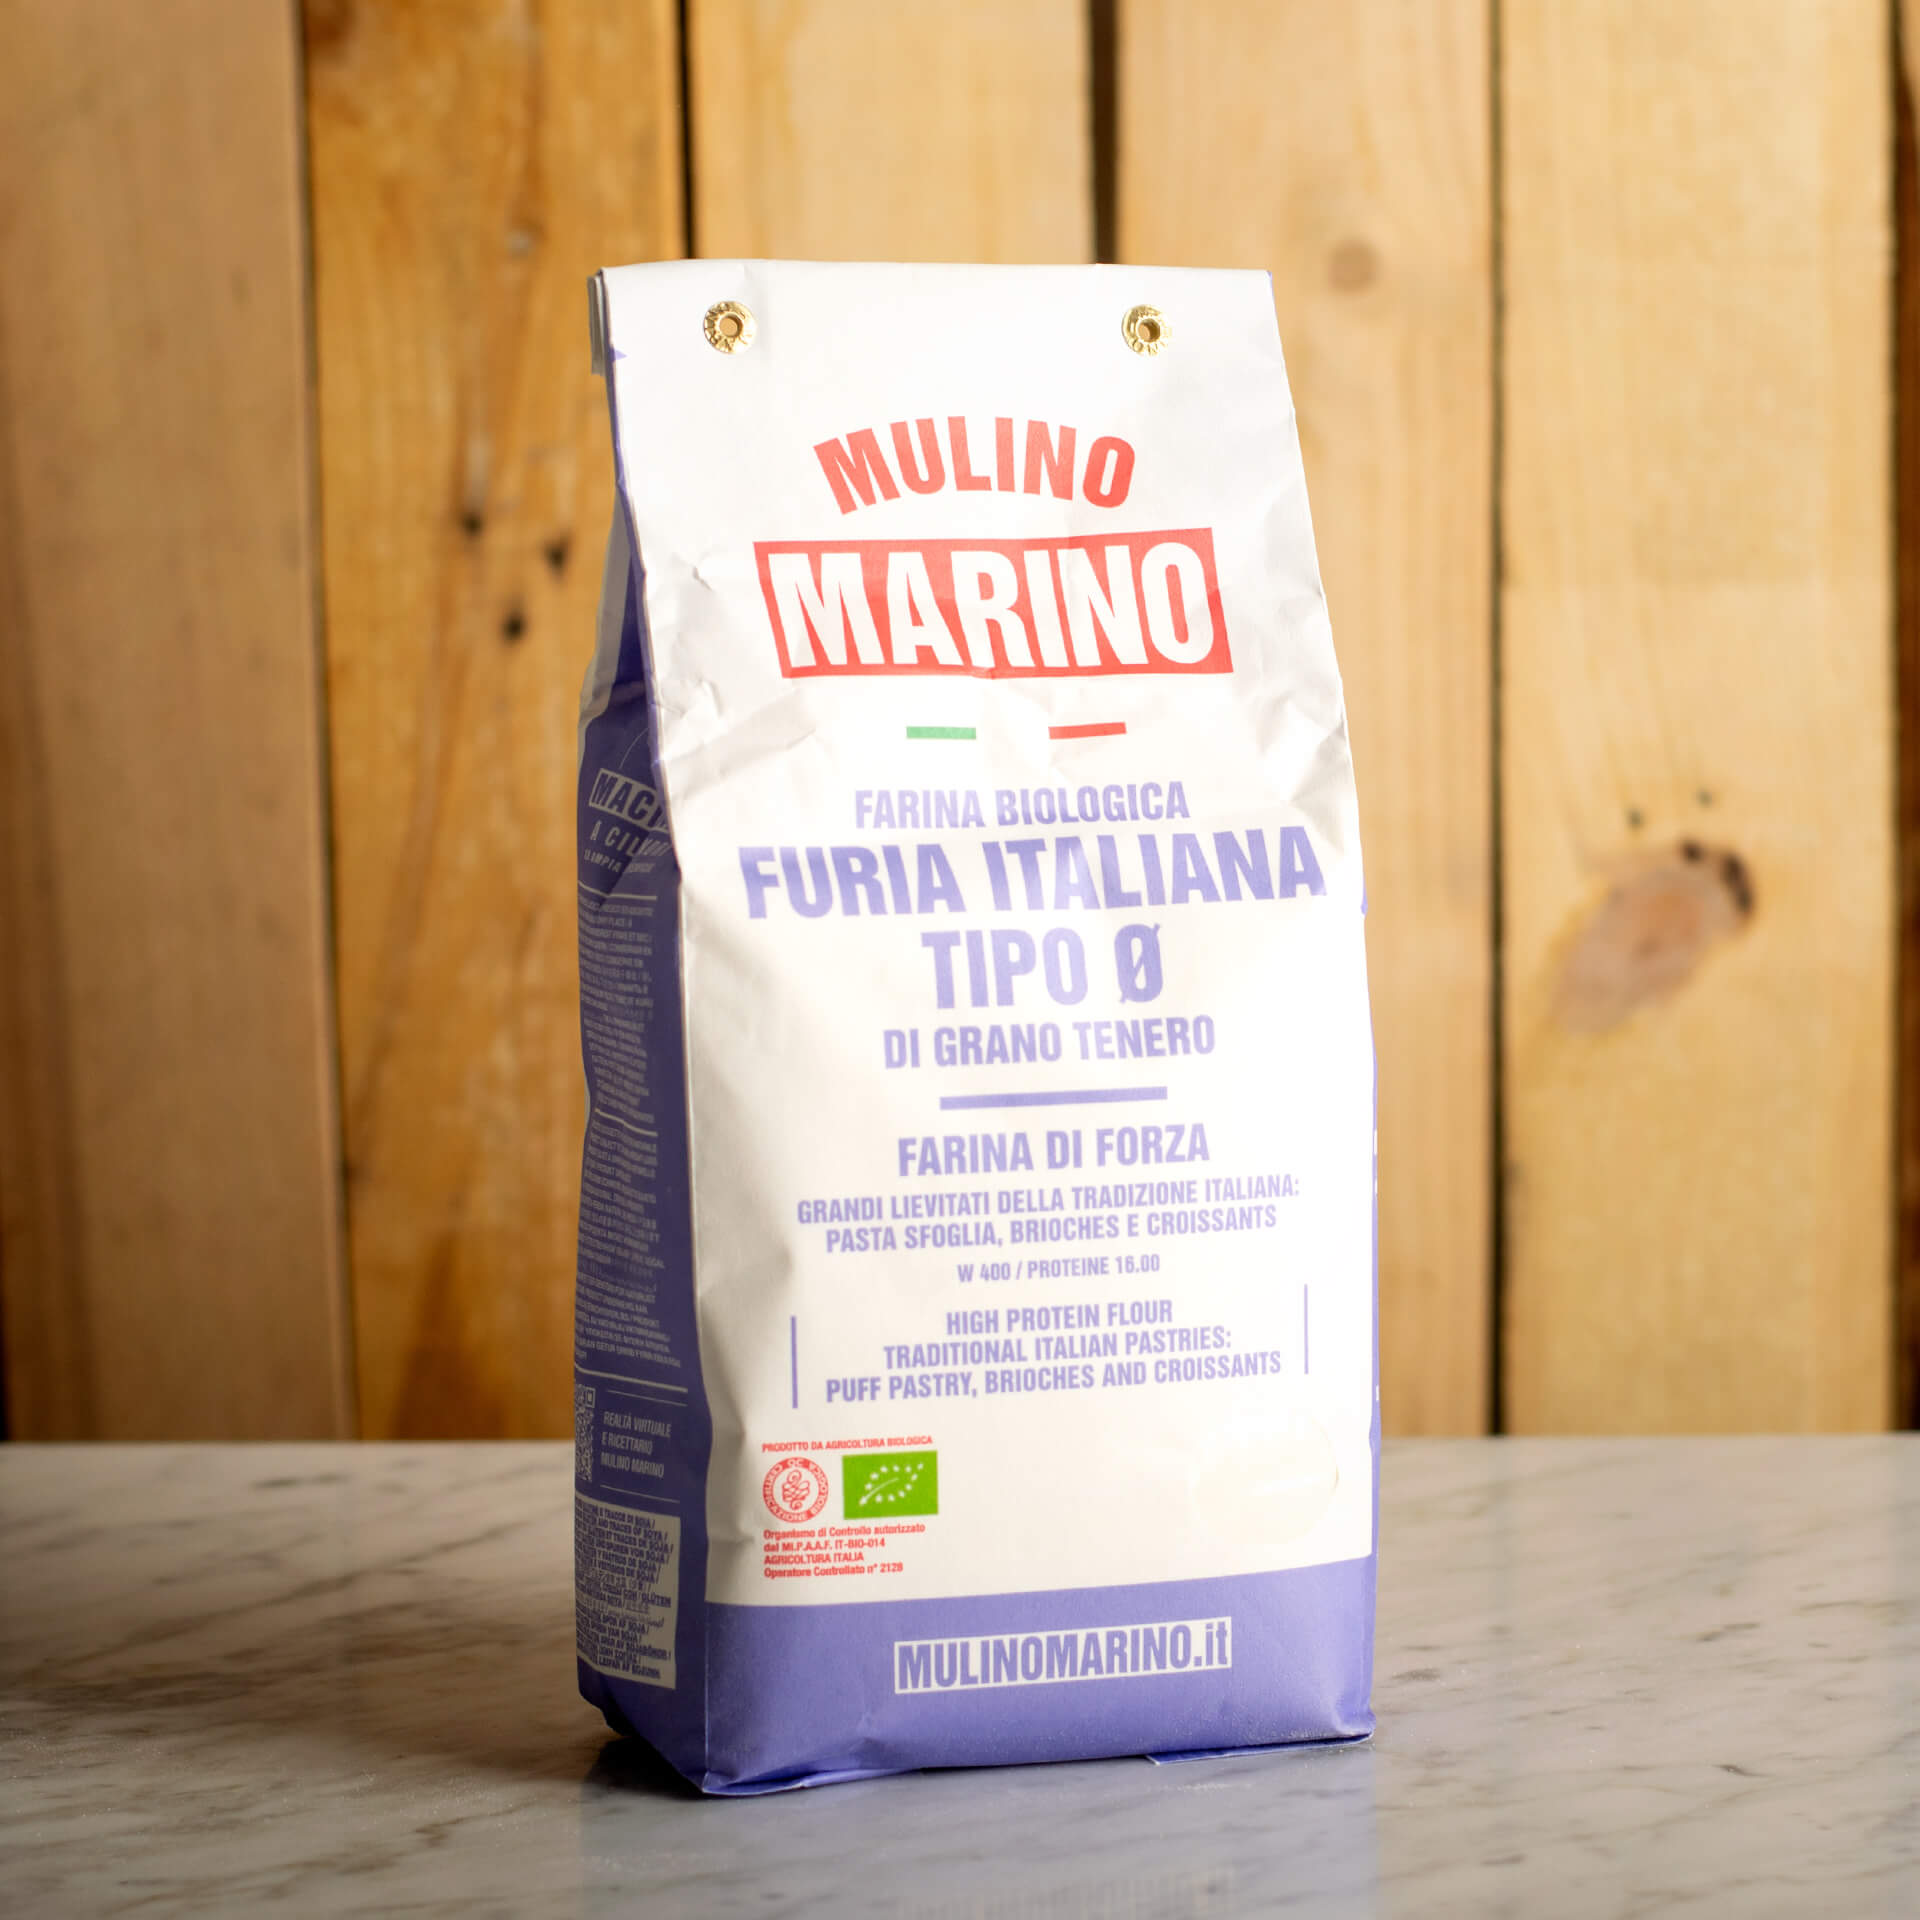 Organic "Furia Italiana" Flour 1kg